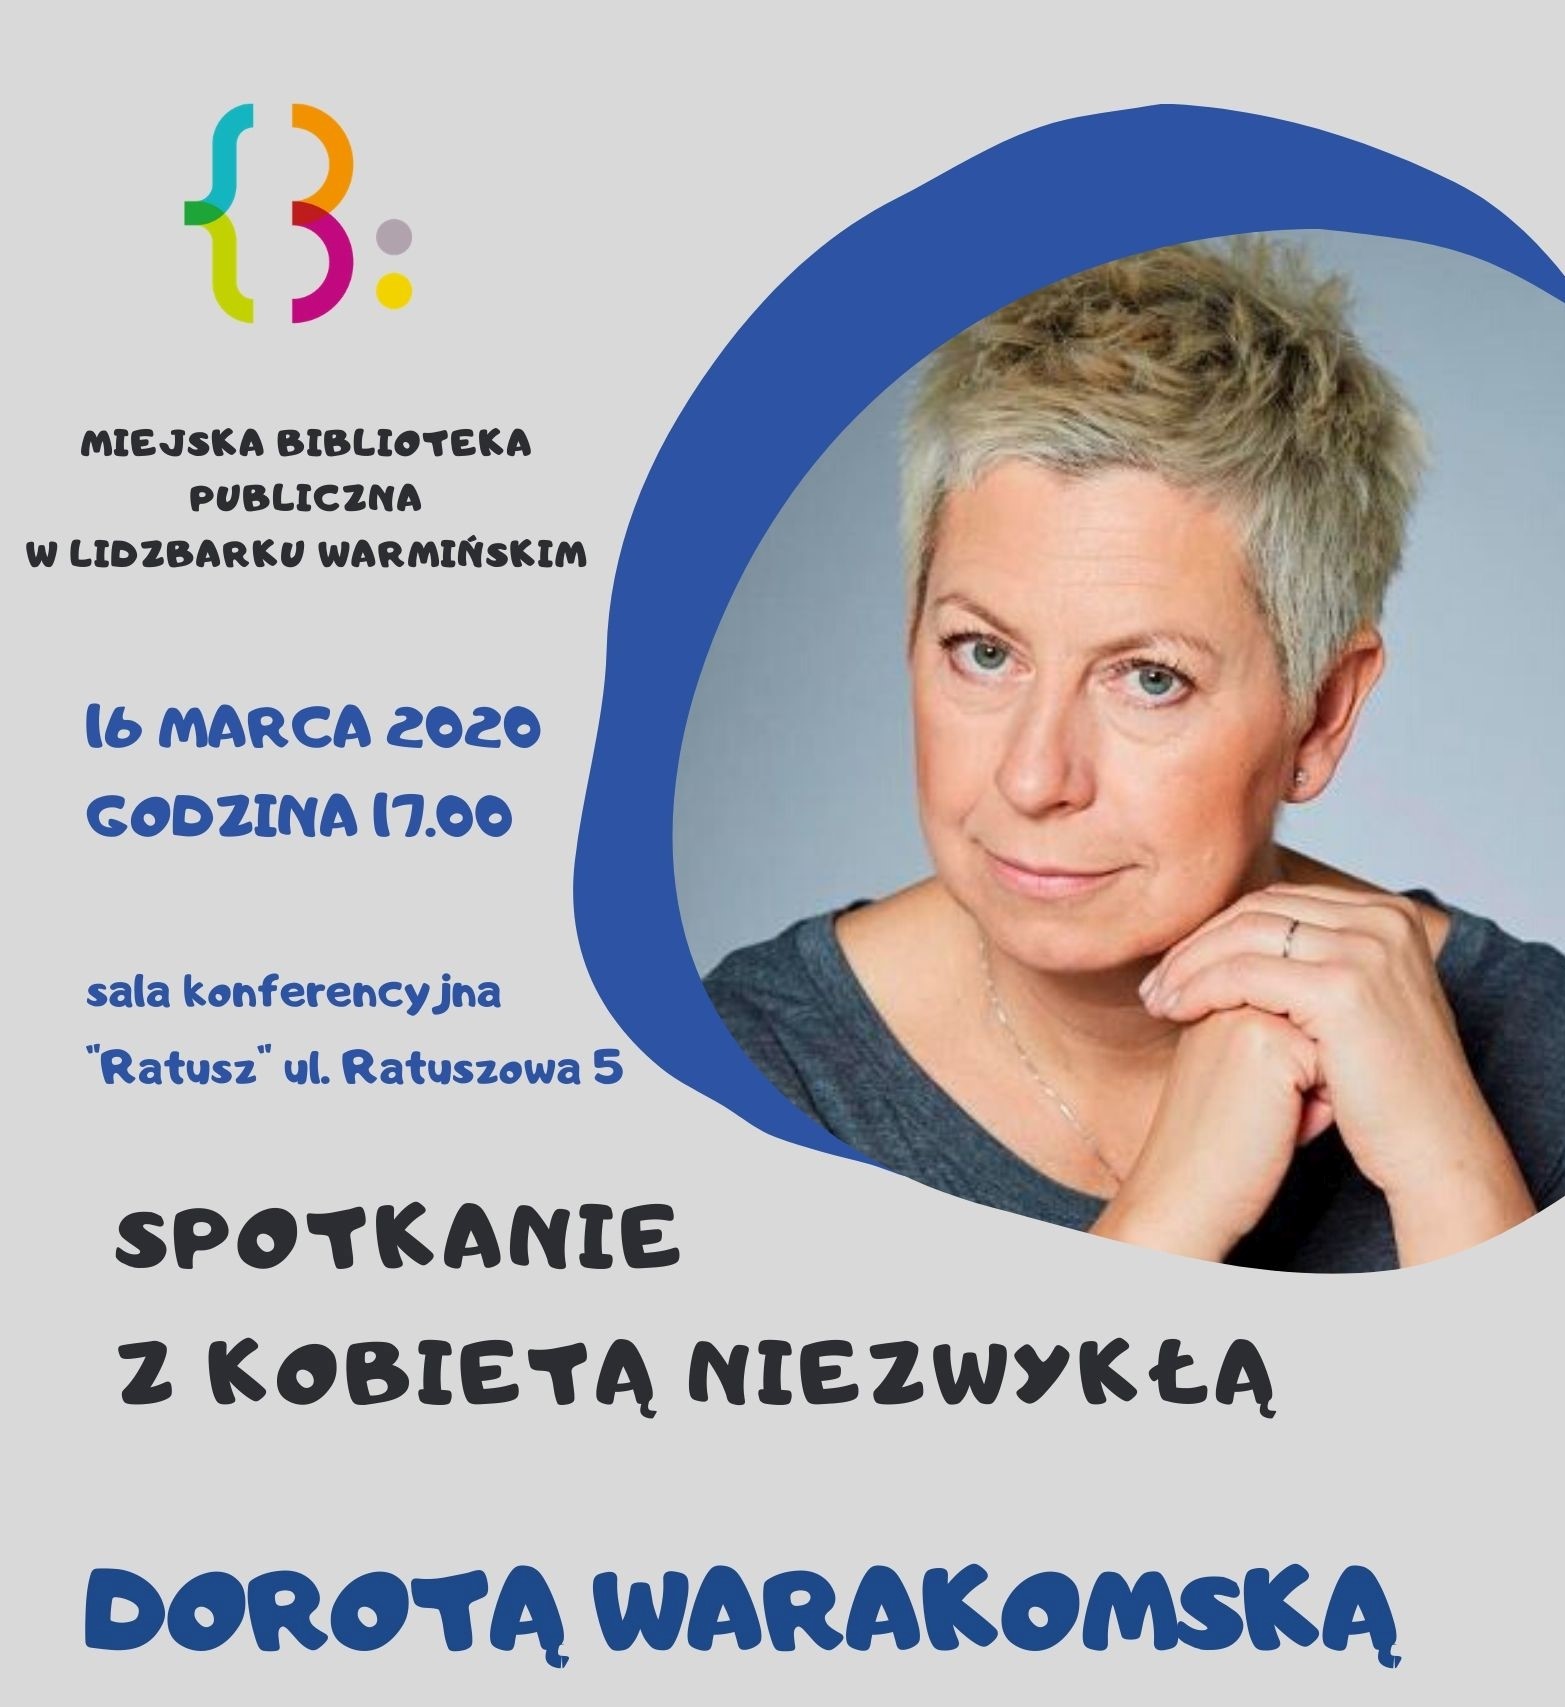 Spotkanie z kobietą niezwykłą - Dorotą Warakomską w Miejskiej Bibliotece Publicznej w Lidzbarku Warmińskim